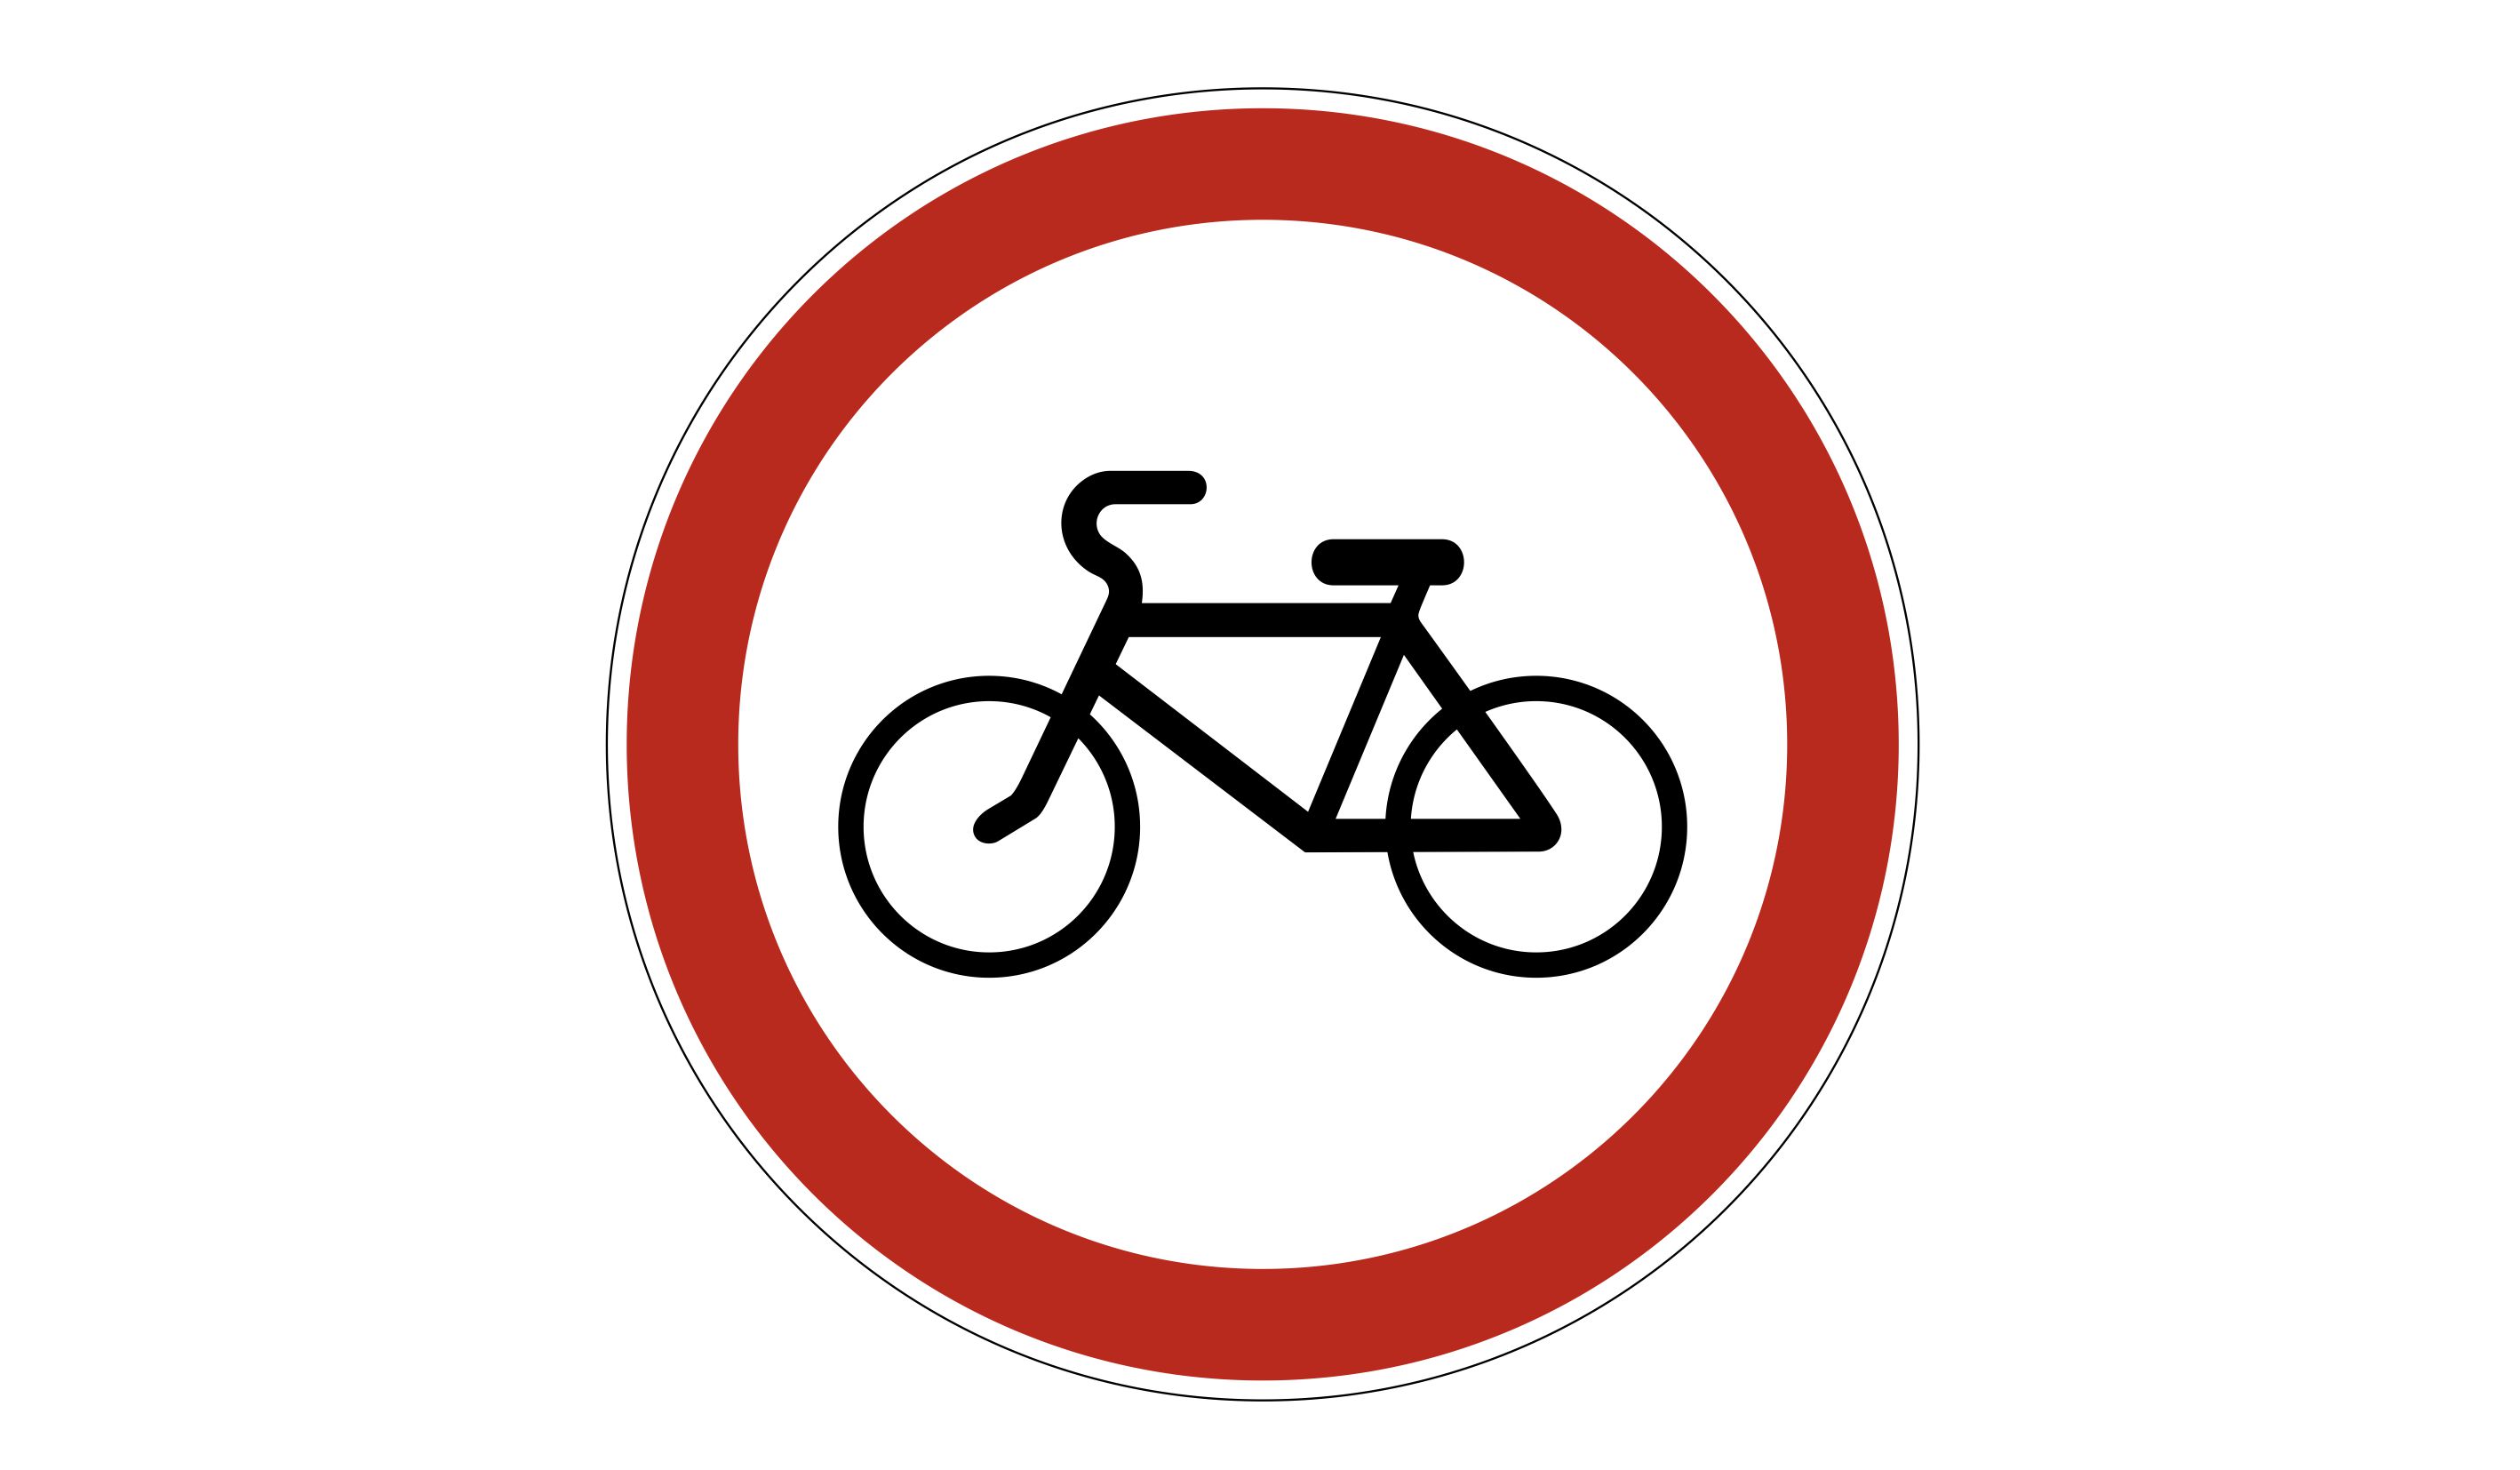 Знак 3.9 движение на велосипедах запрещено